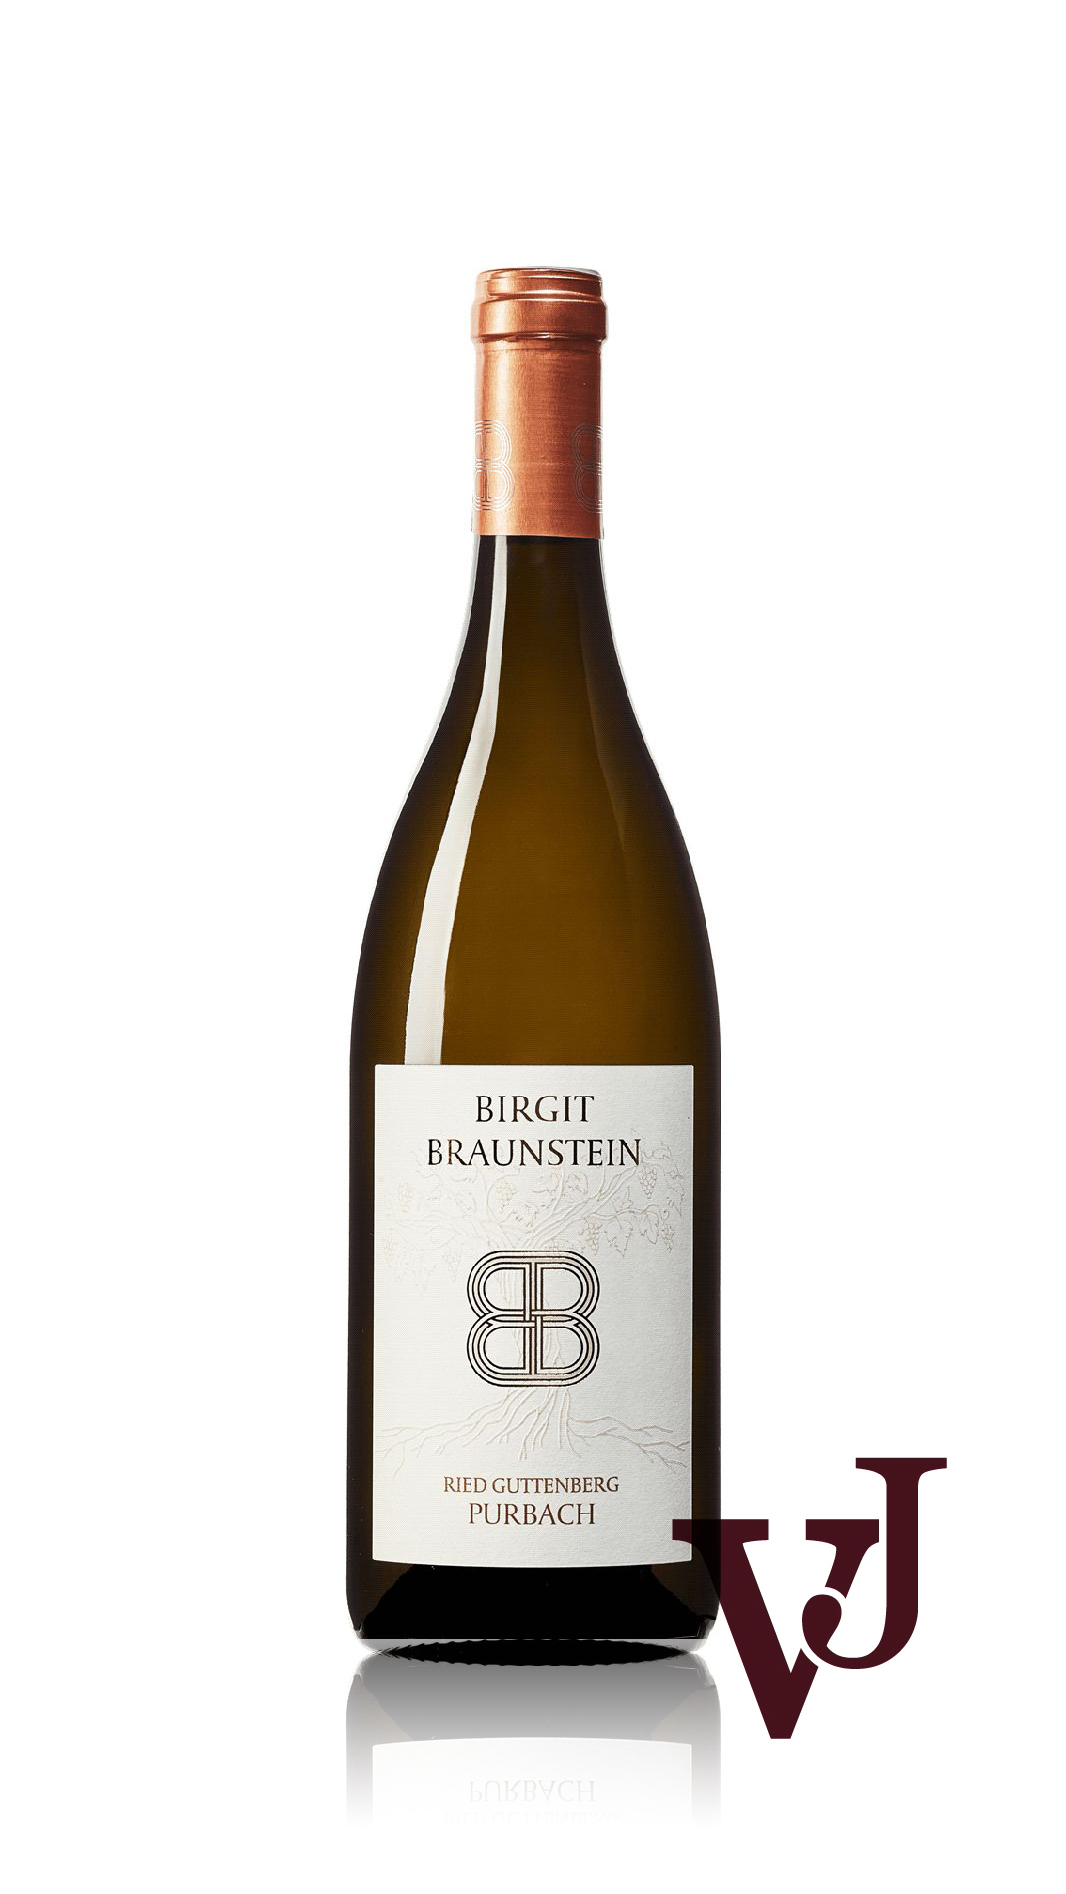 Vitt Vin - Birgit Braunstein Ried Guttenberg Chardonnay 2020 artikel nummer 7182201 från producenten Birgit Braunstein från området Österrike